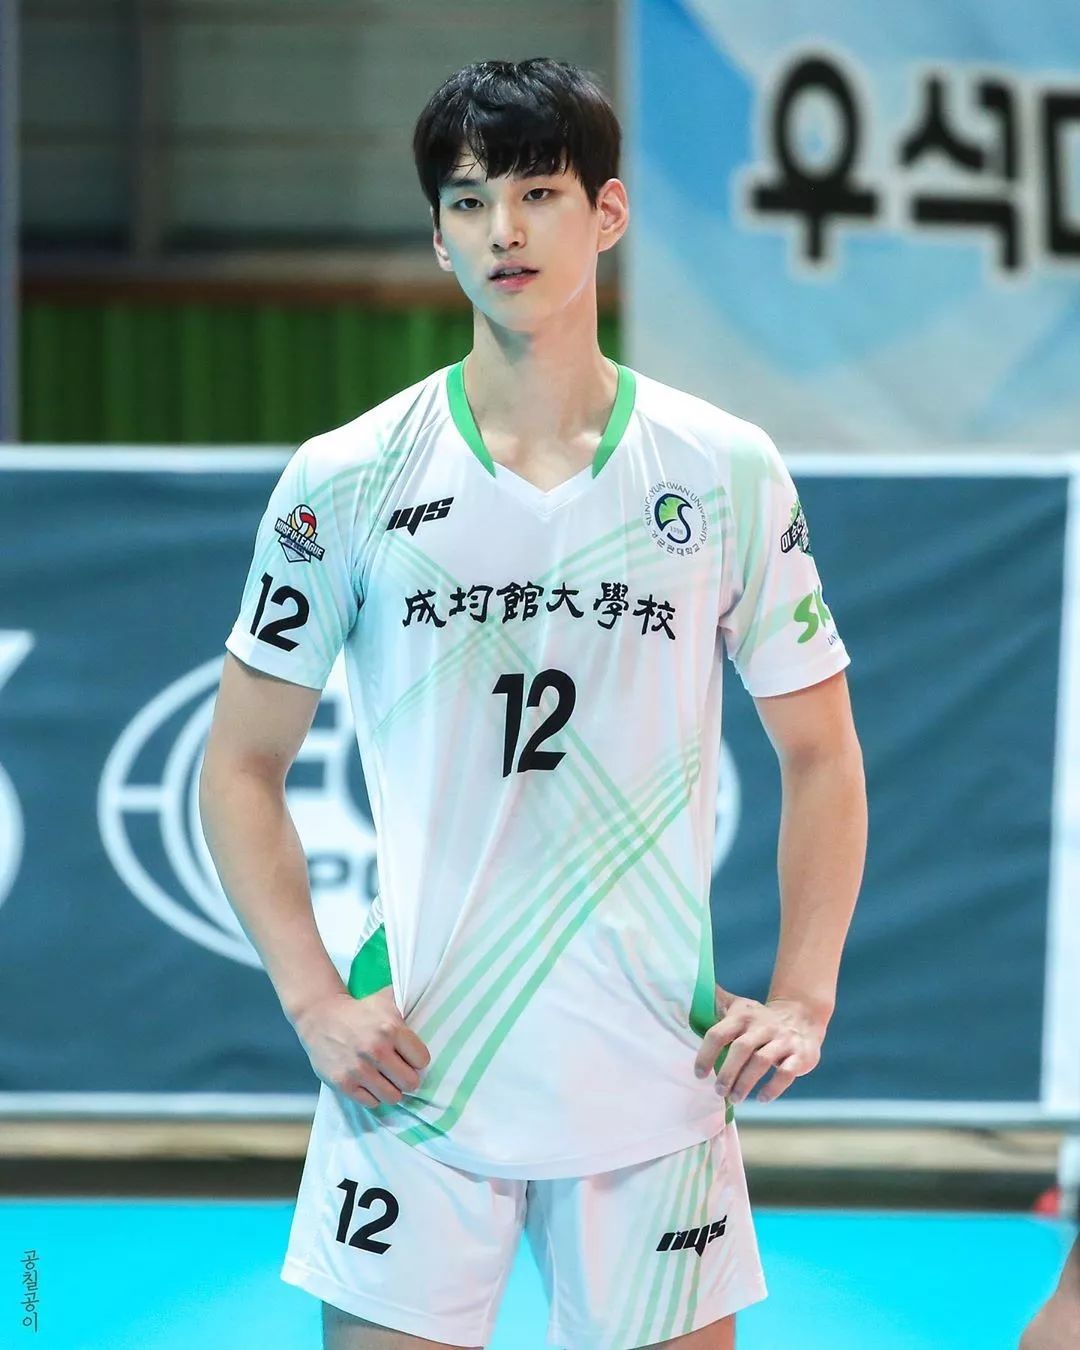 登上voguekorea的韩国排球运动员好帅好可爱